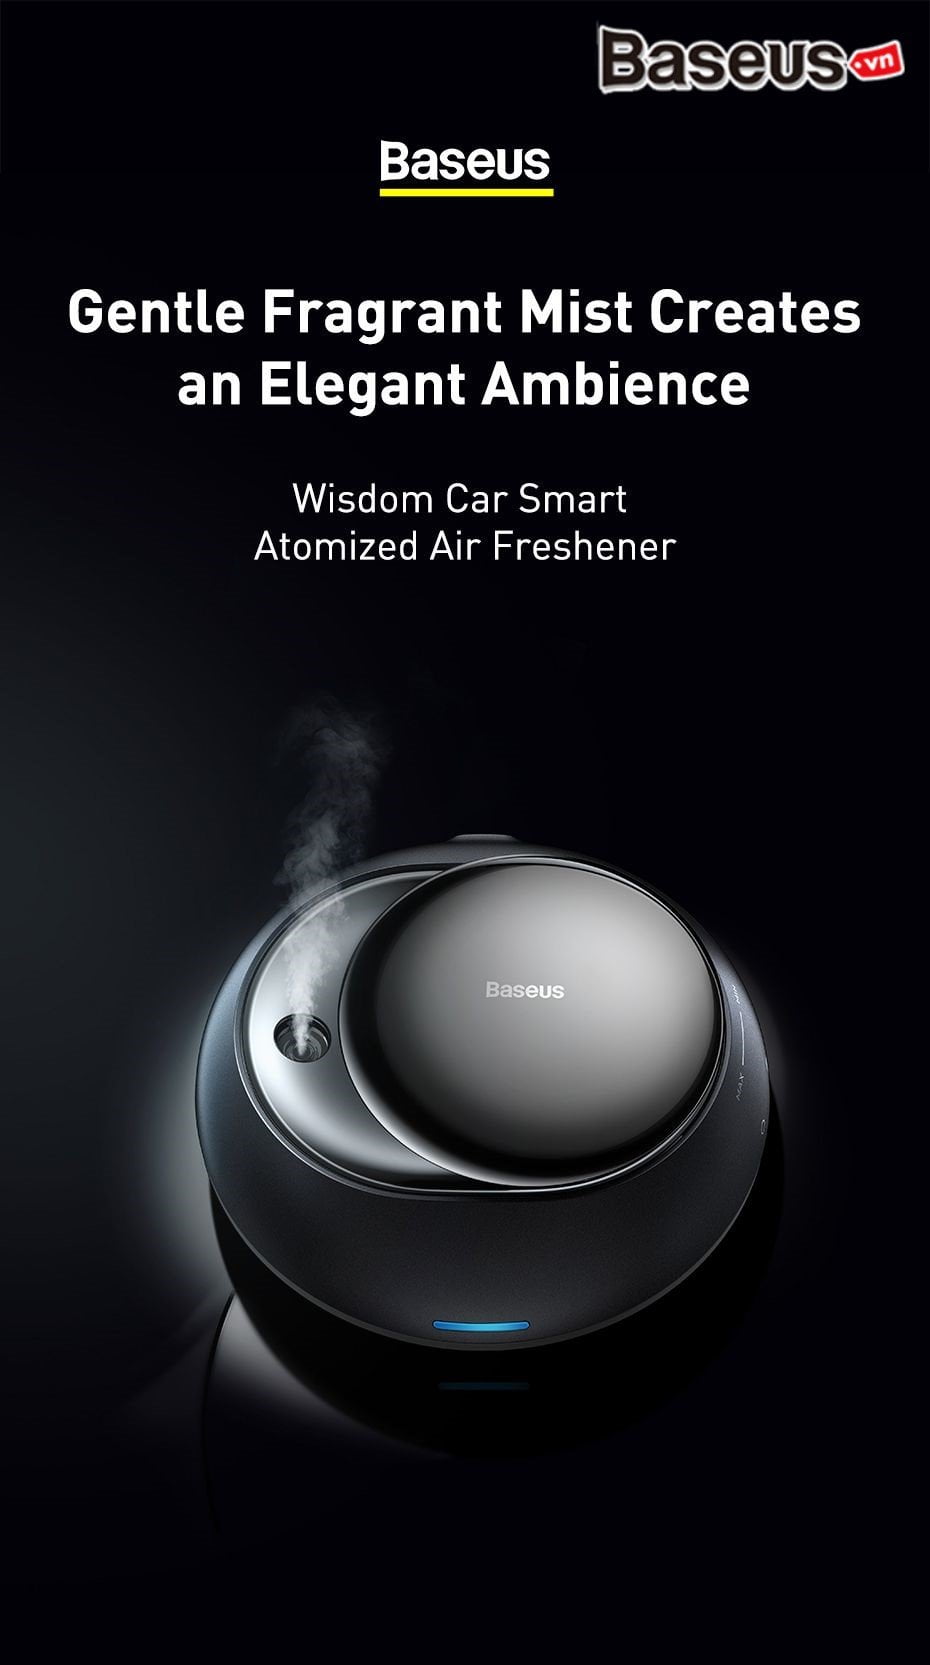 baseus wisdom car smart atomized air freshener 001 a45d502c3d044664abda3de37954a9f3